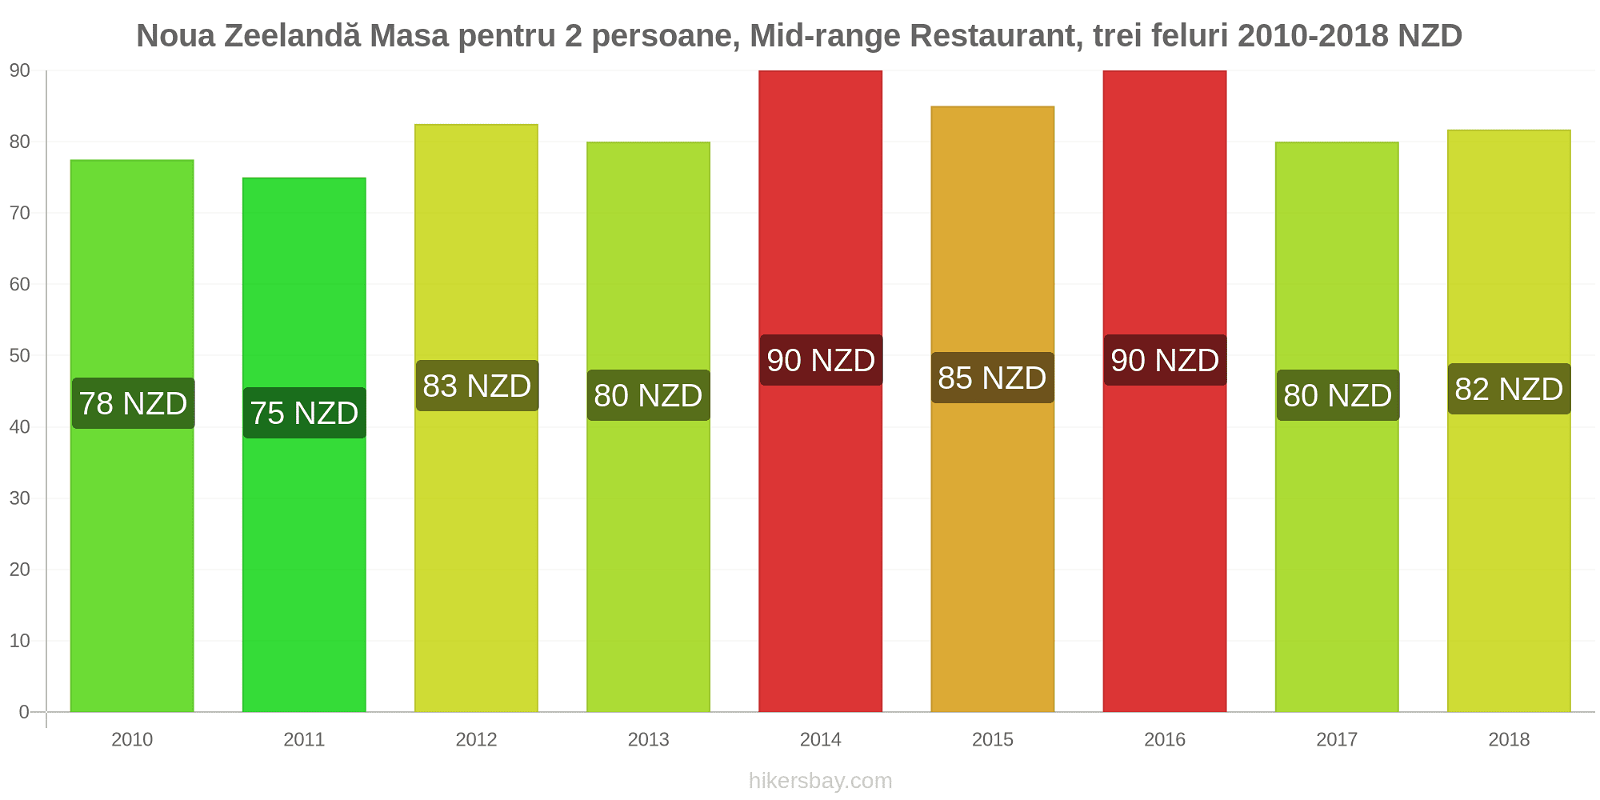 Noua Zeelandă schimbări de prețuri Masă pentru 2 persoane, restaurant de gamă medie, trei feluri de mâncare hikersbay.com